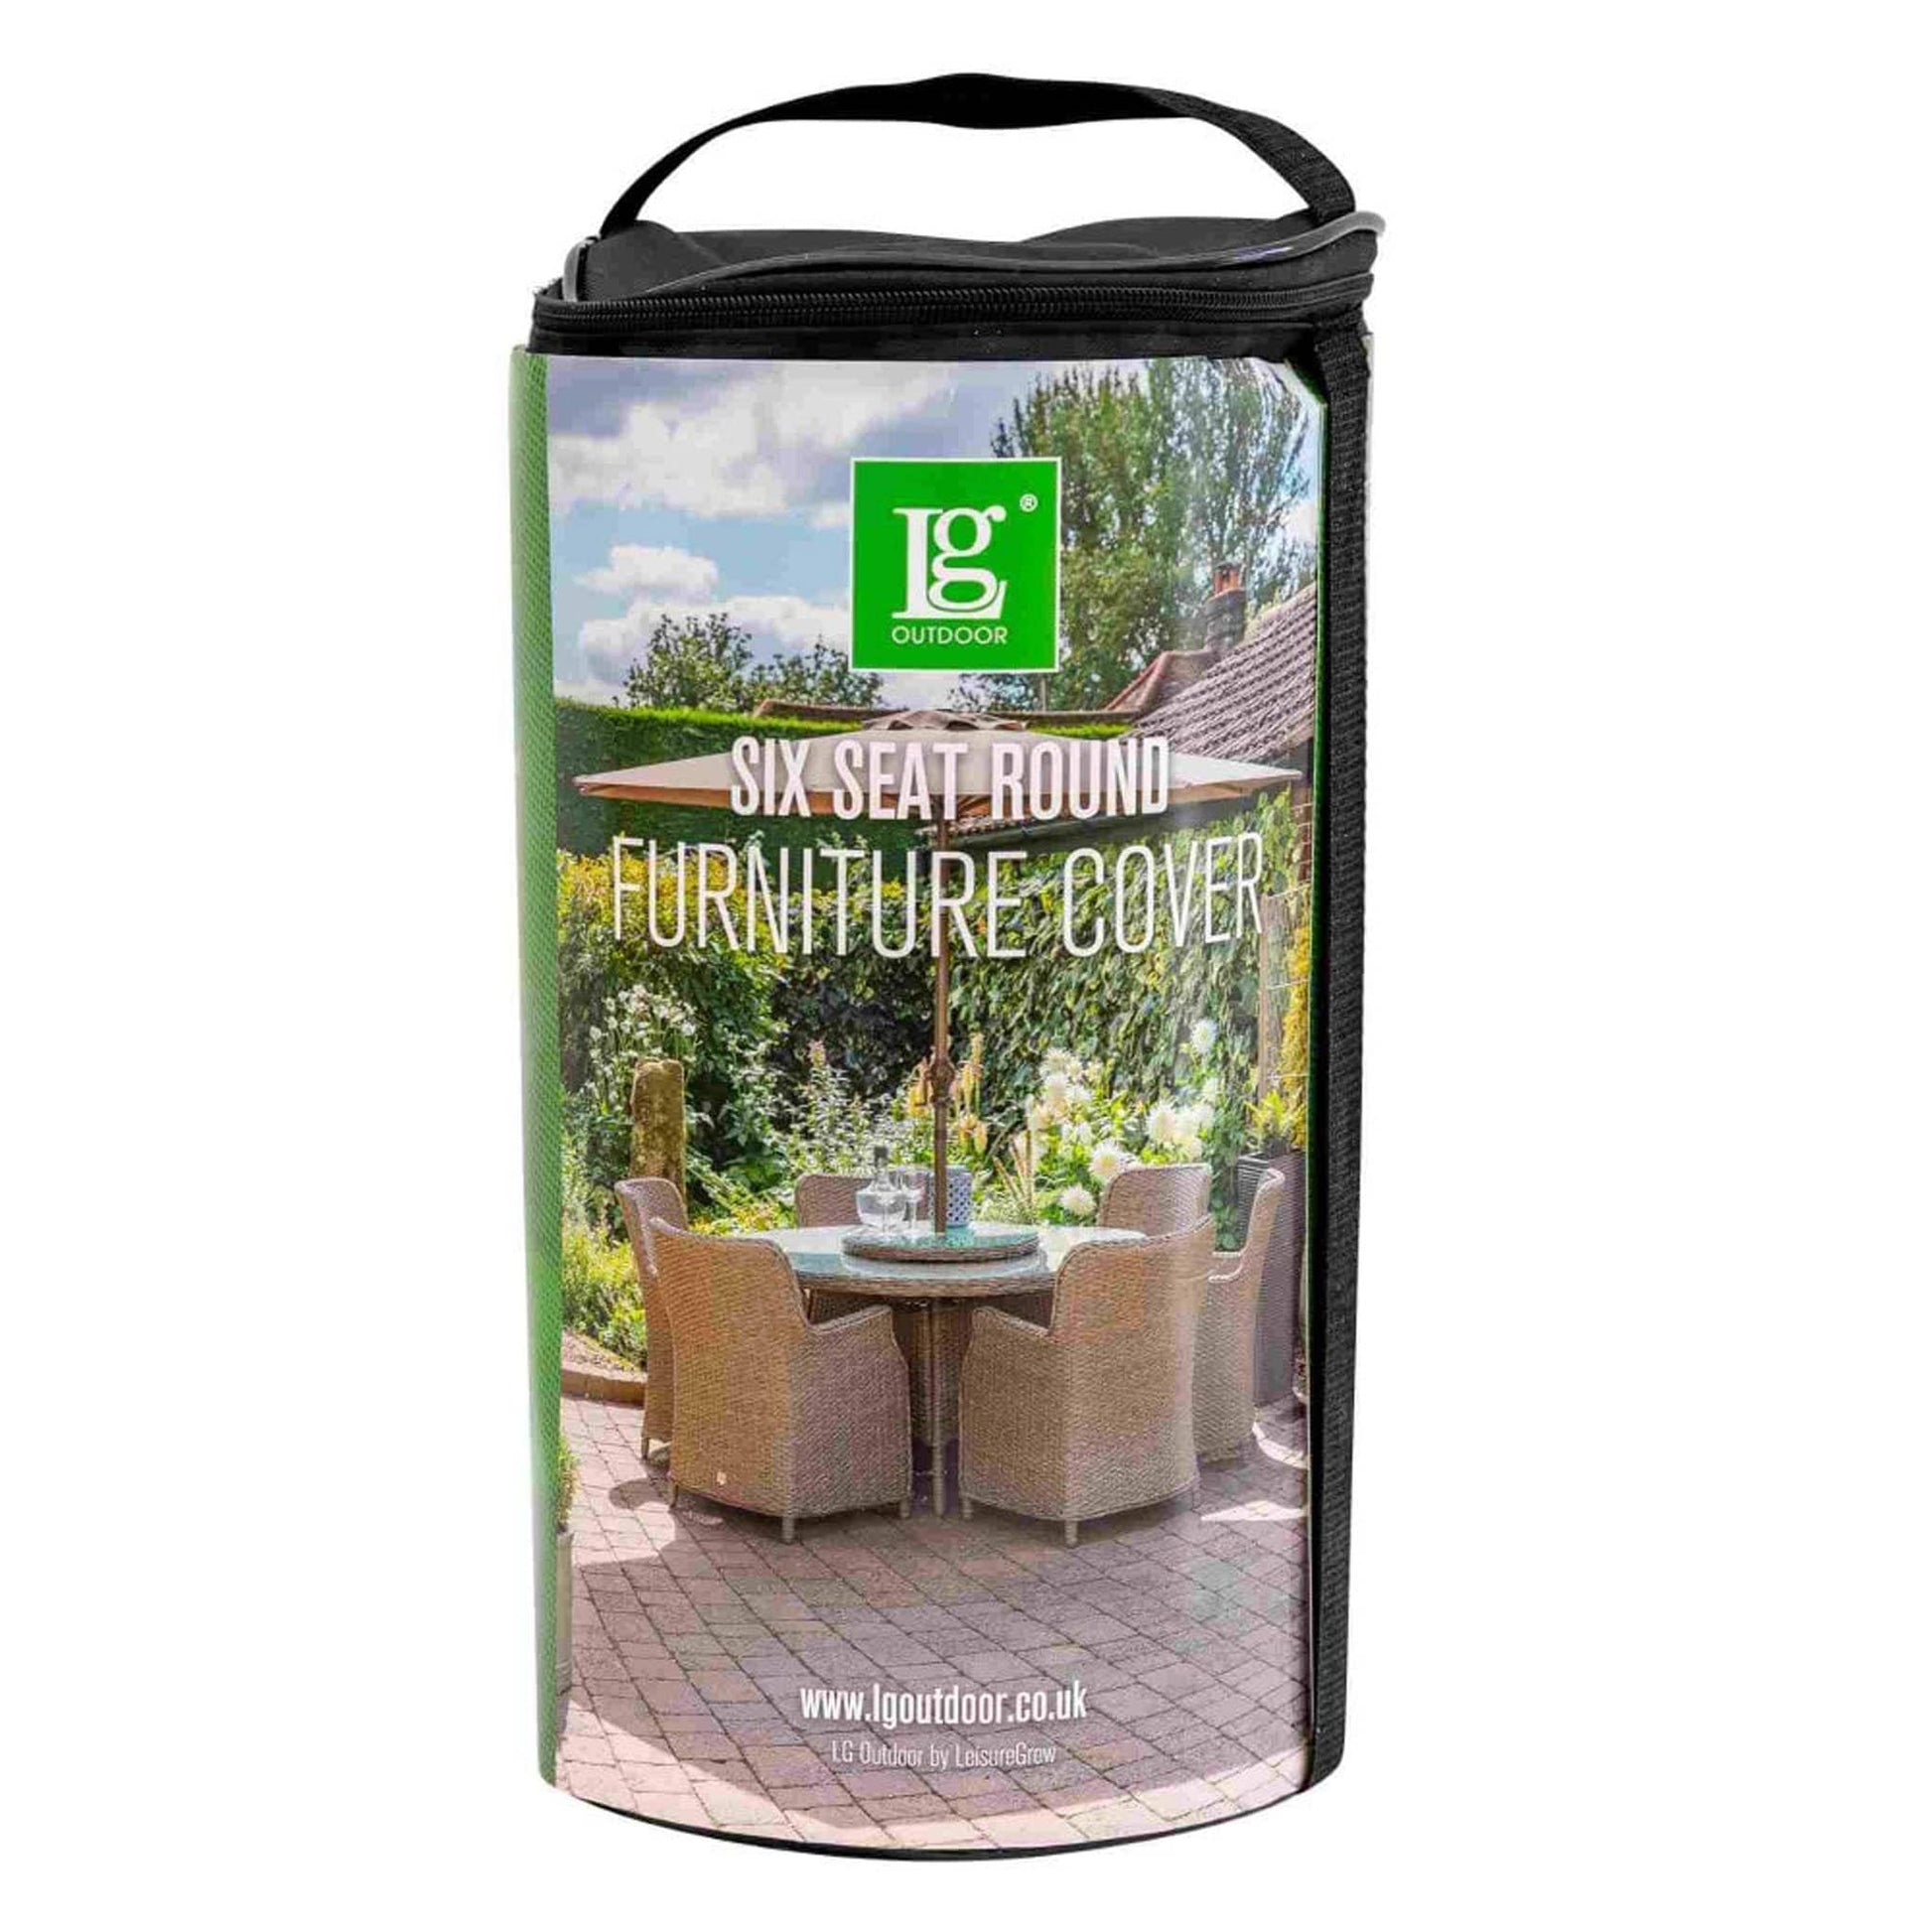 Gardening  -  Leisure Grow 6 Seat Round Garden Furniture Cover  -  50155620